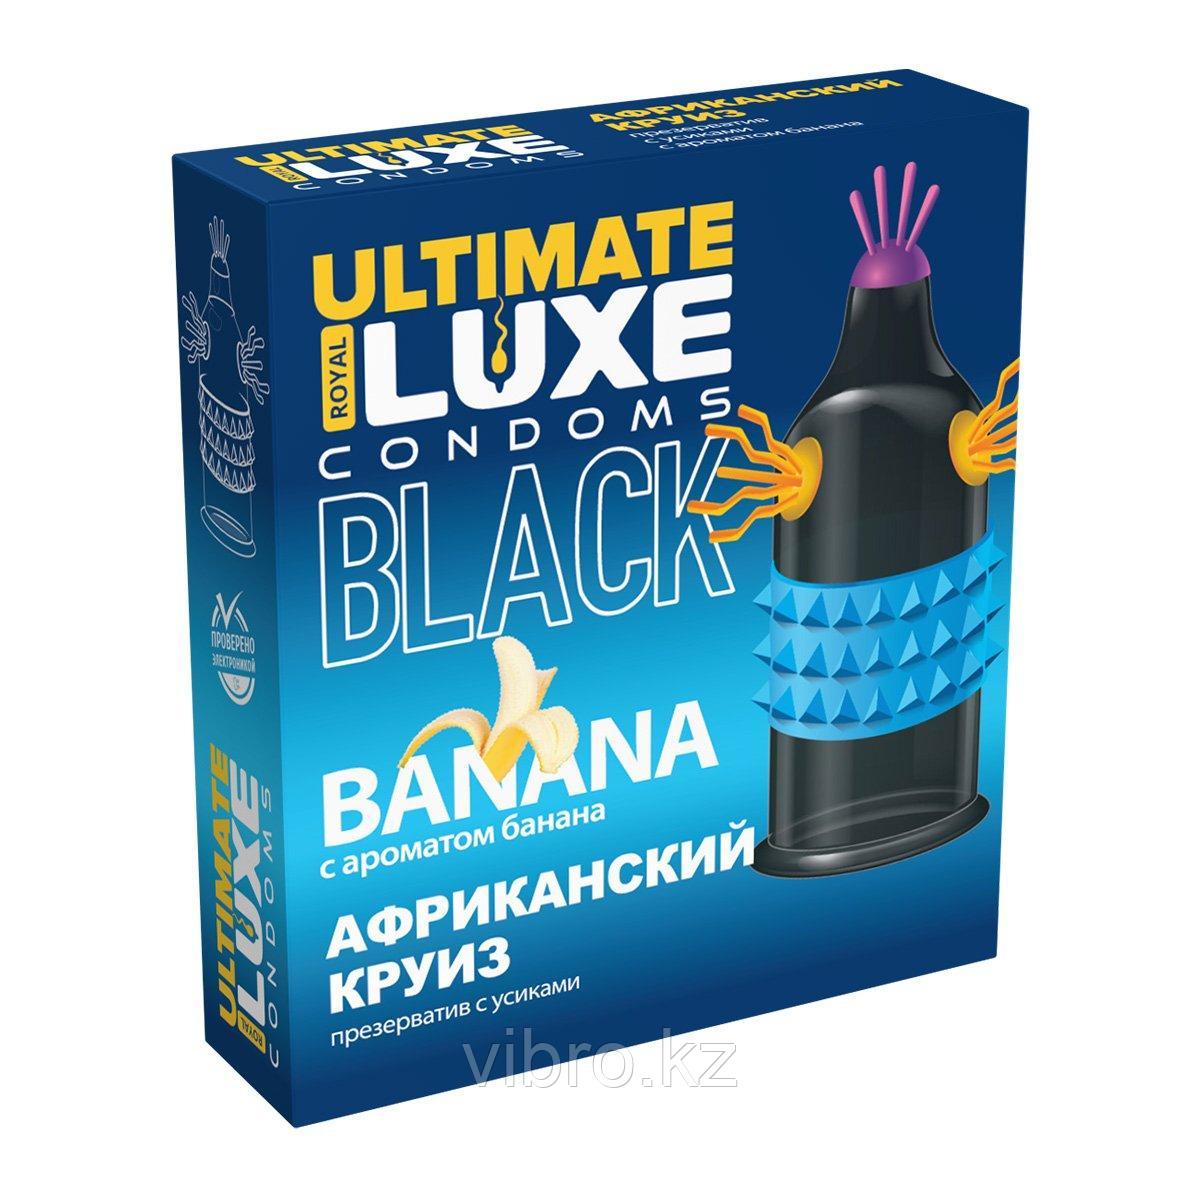 Презерватив Luxe EXTREME "Африканский круиз", с ароматом Банана 1шт